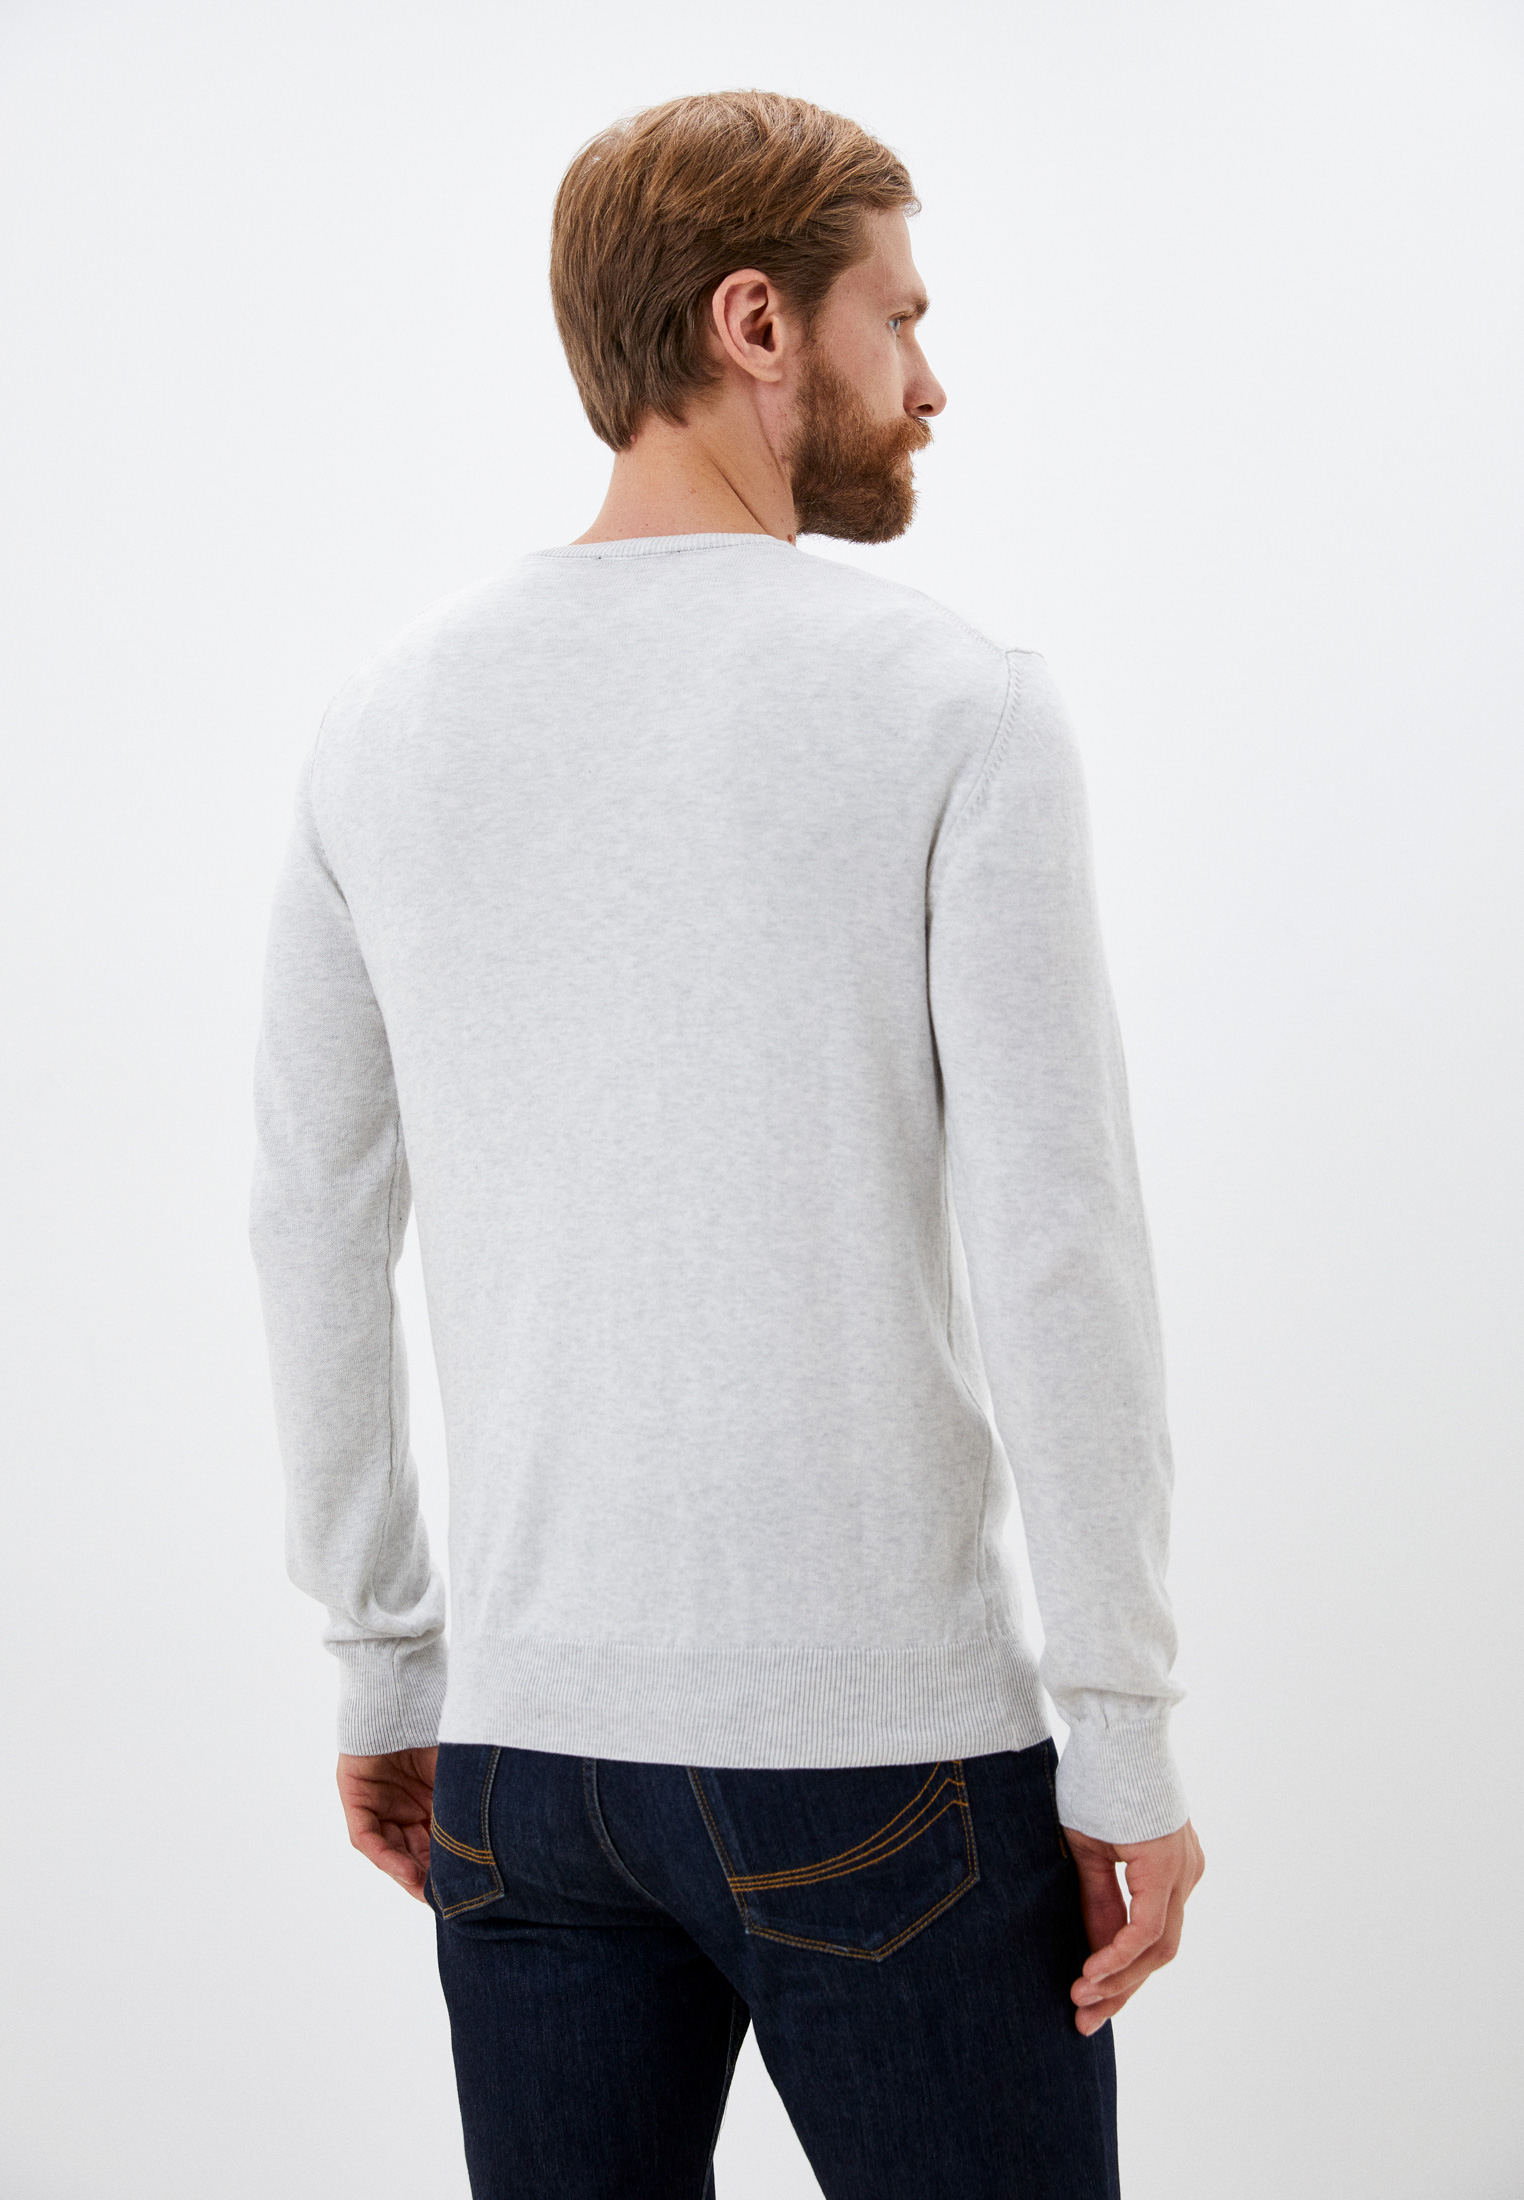 Пуловер Basics & More BA492921: изображение 3